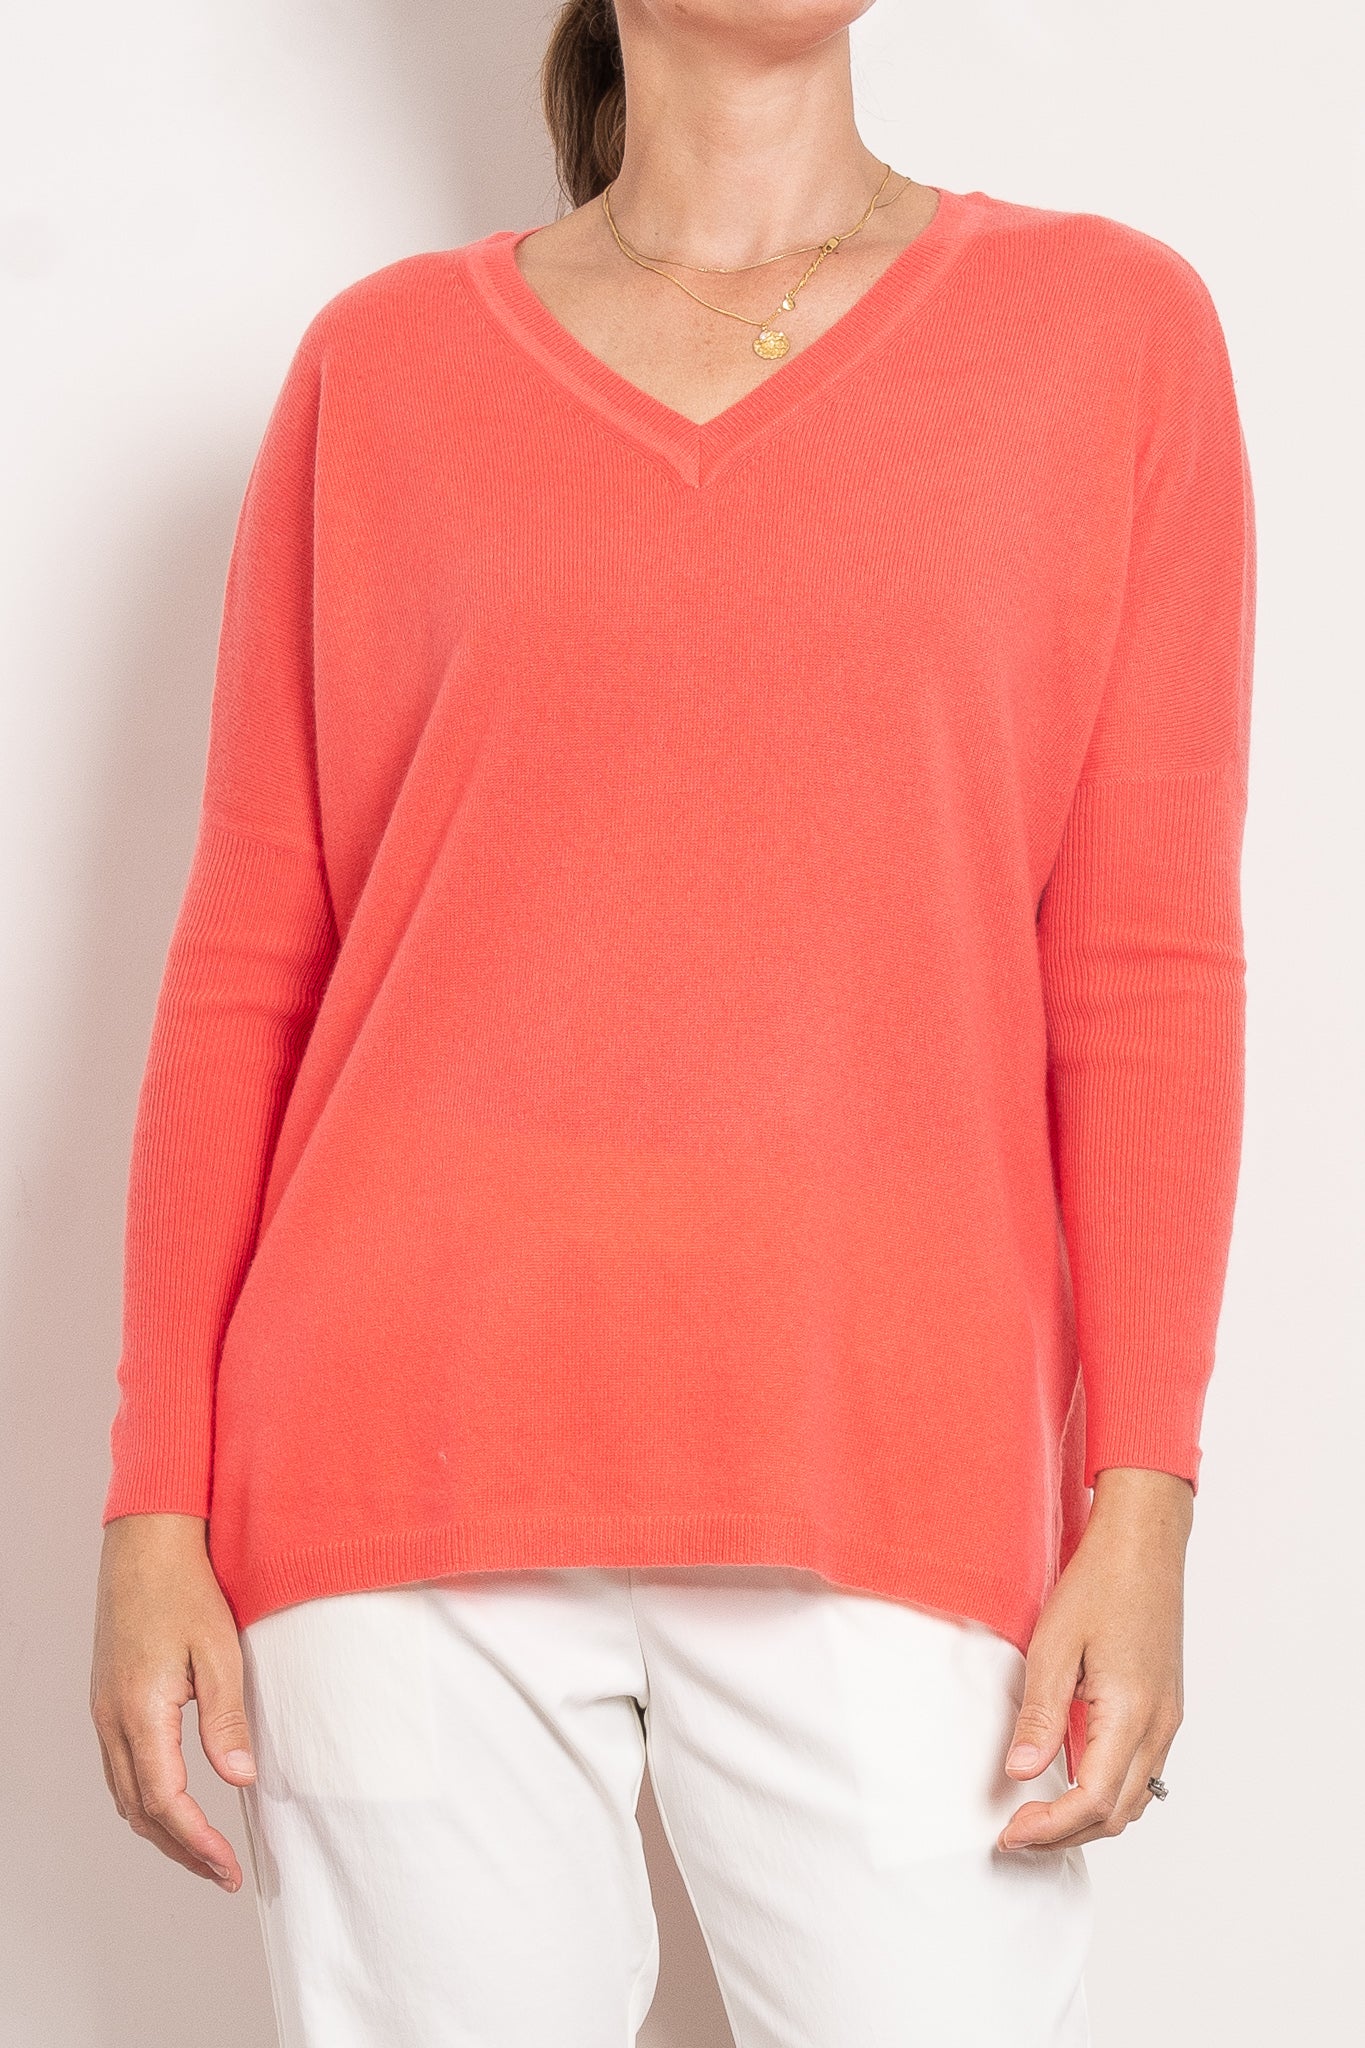 Mia Fratino Cashmere Essentials V Neck Boyfriend Sweater